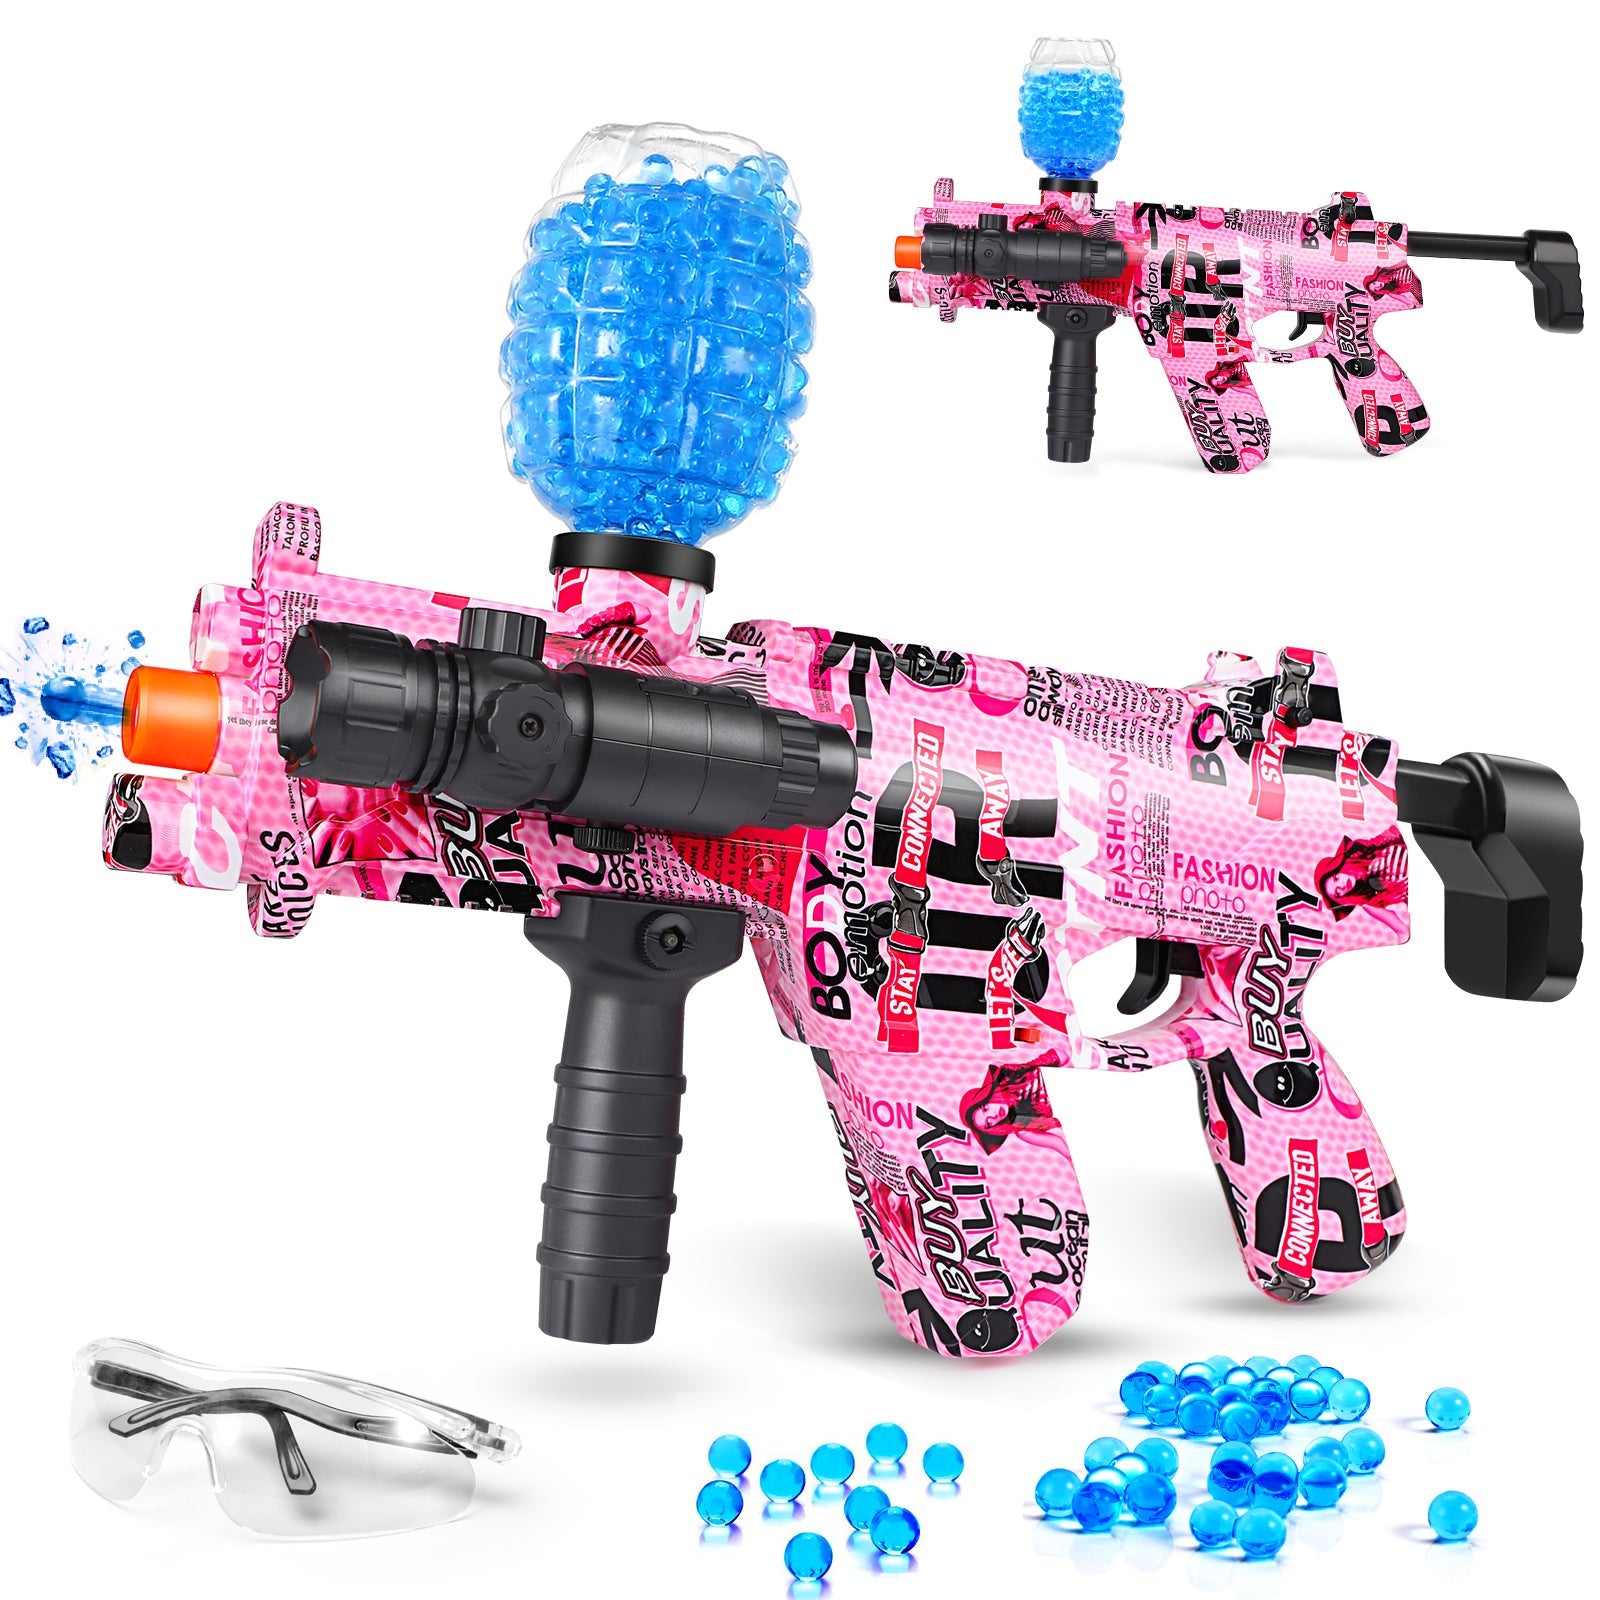 Now Ferventoys™ R99 Splatter Ball Gun Safe toys for 15+